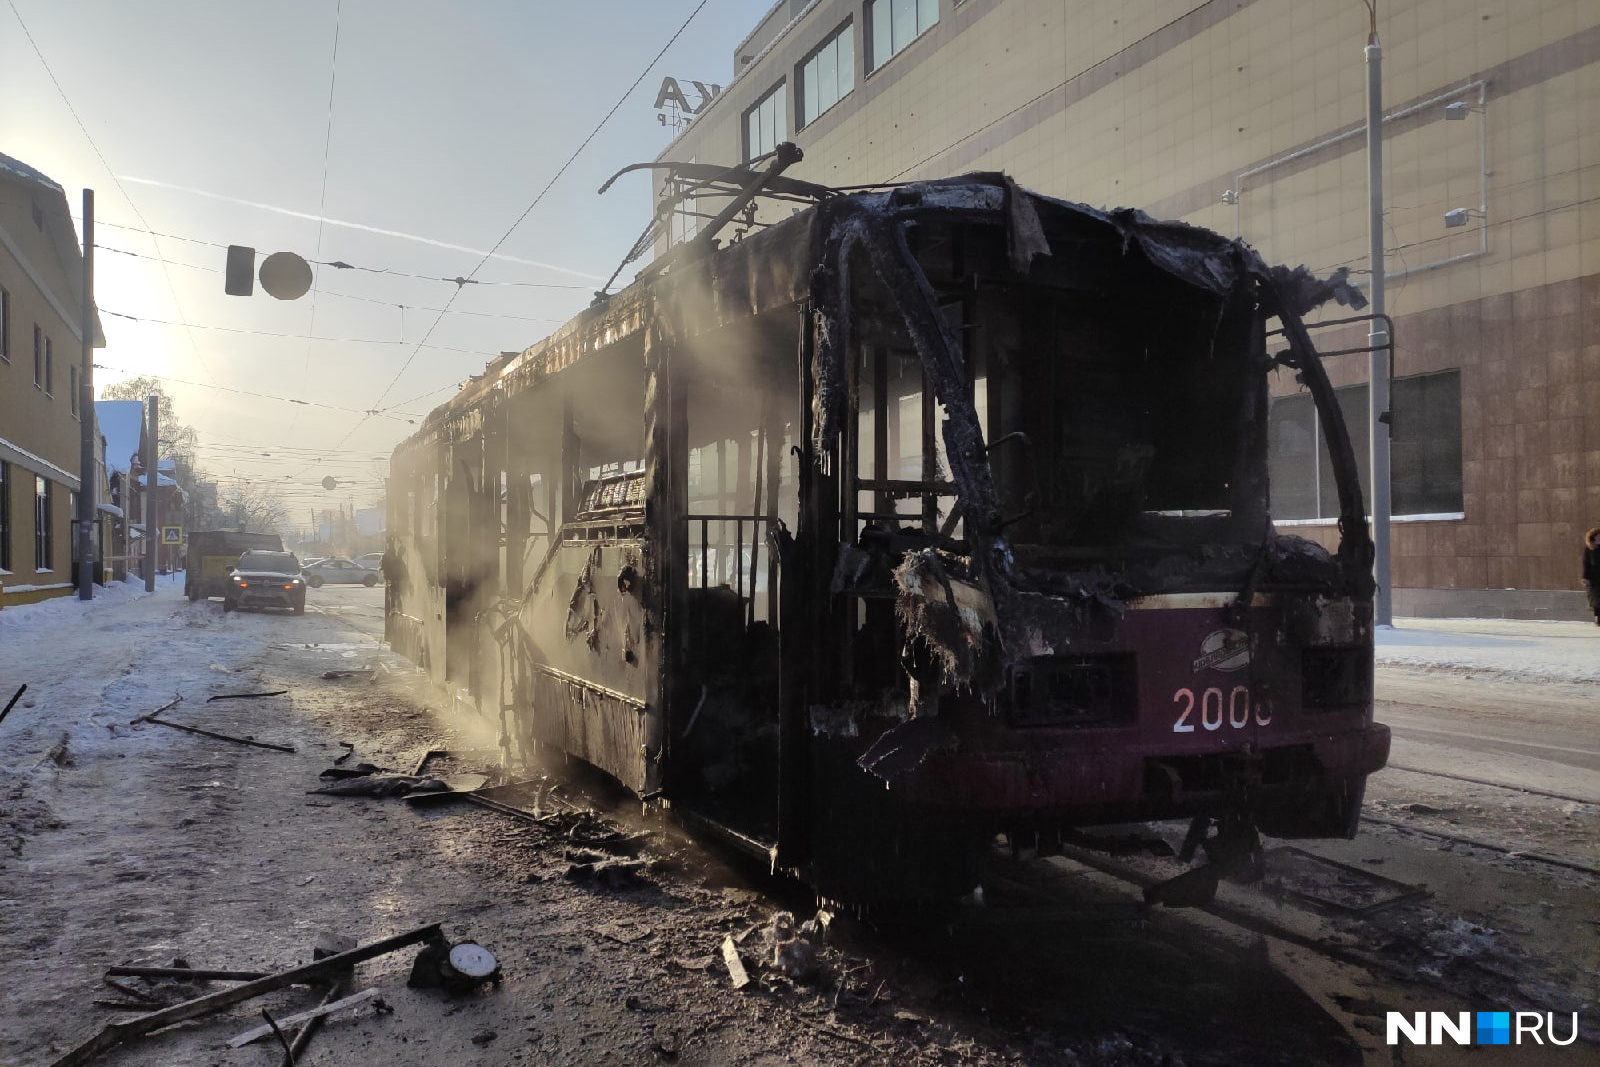 23 декабря 2013. Сгорел трамвай в Нижнем Новгороде 23 декабря. Пожар трамвая в Нижнем Новгороде. В Нижнем сгорел трамвай.